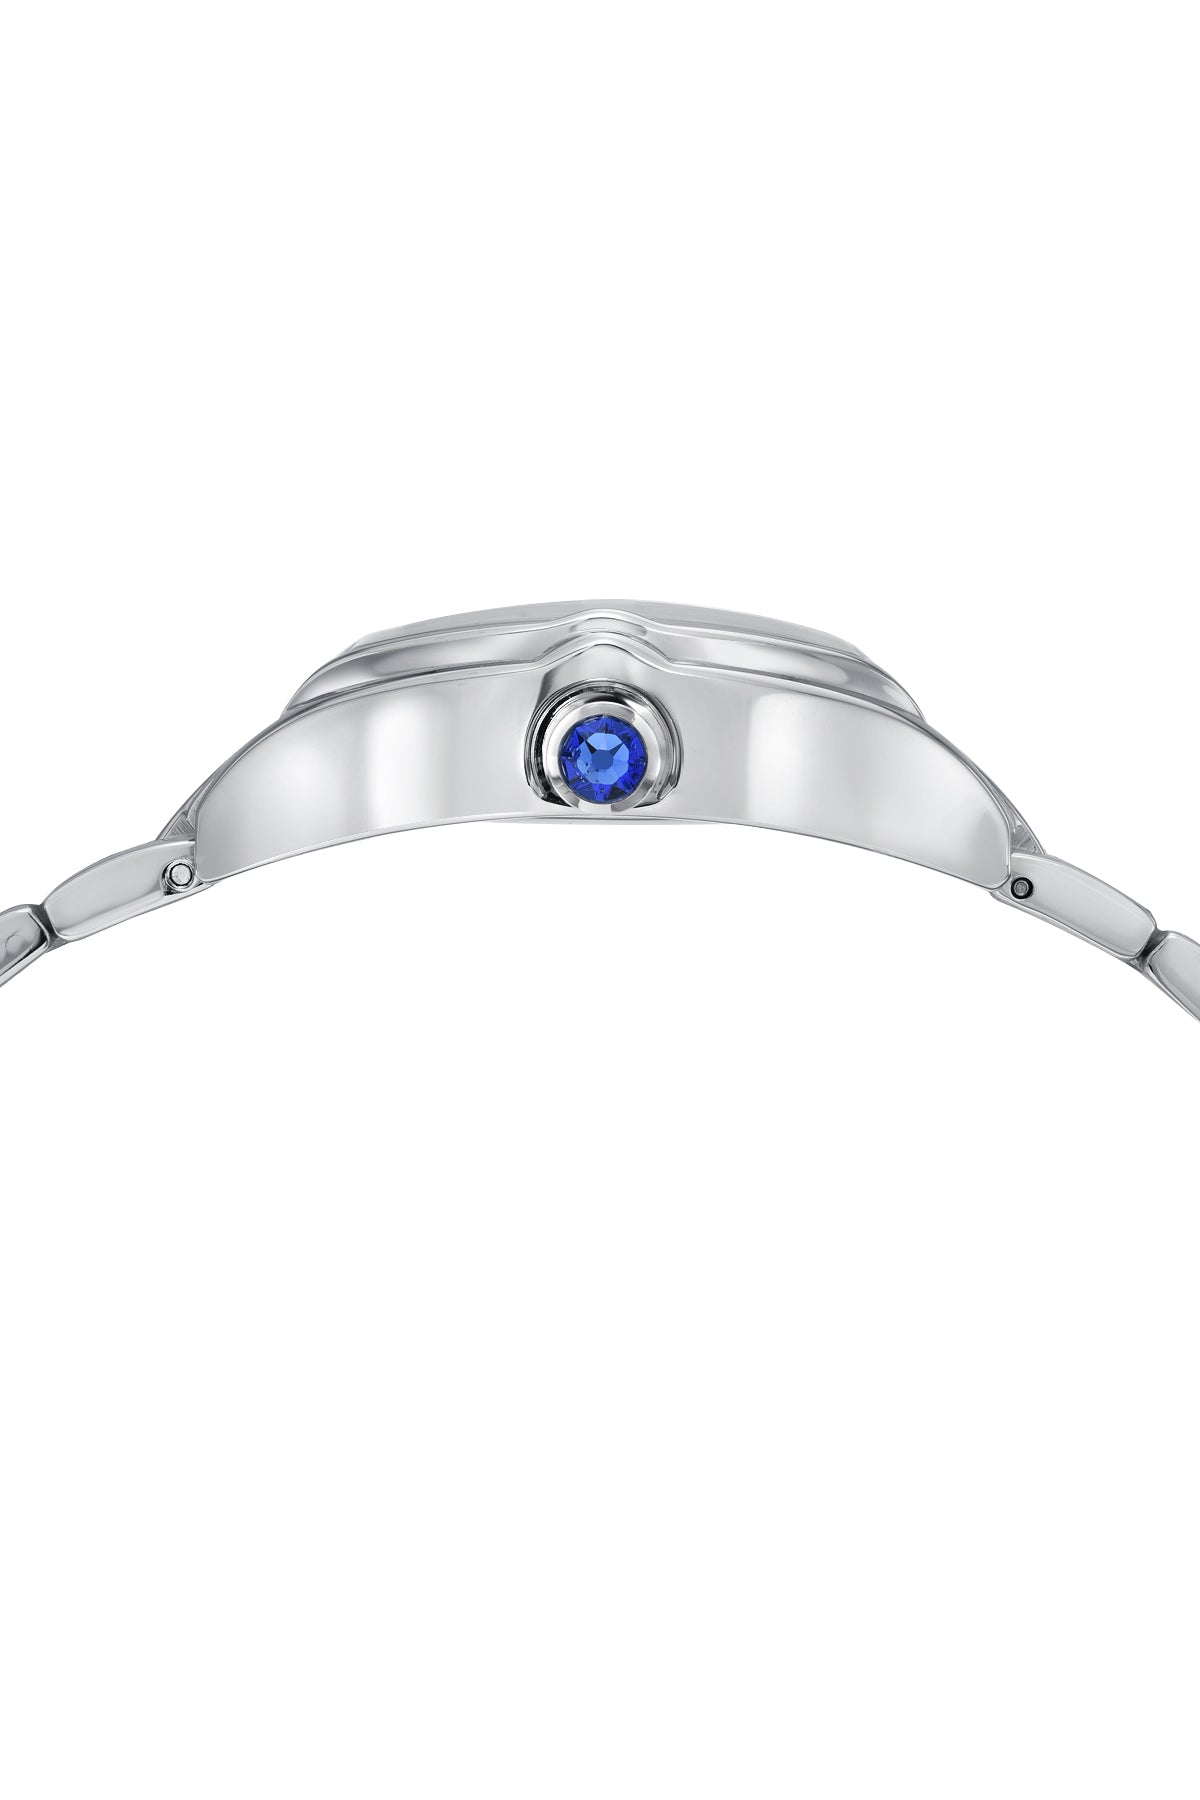 Porsamo Bleu Celine Luxury Tonneau Shaped  Women's Stainless Steel Watch, Silver 1001ACES